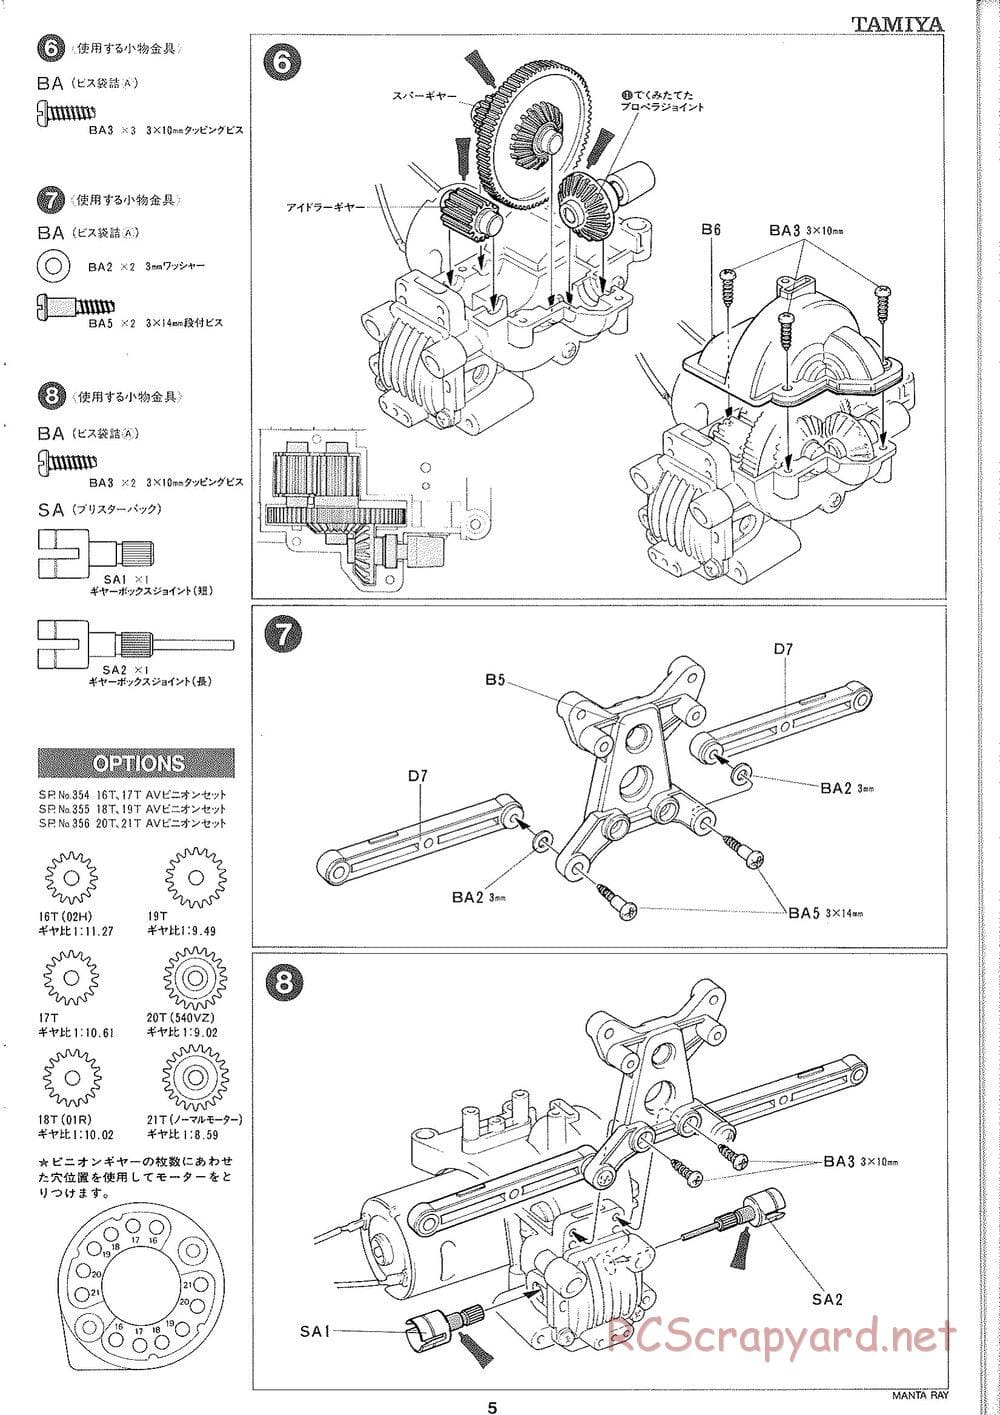 Tamiya - Manta Ray 2005 - DF-01 Chassis - Manual - Page 6